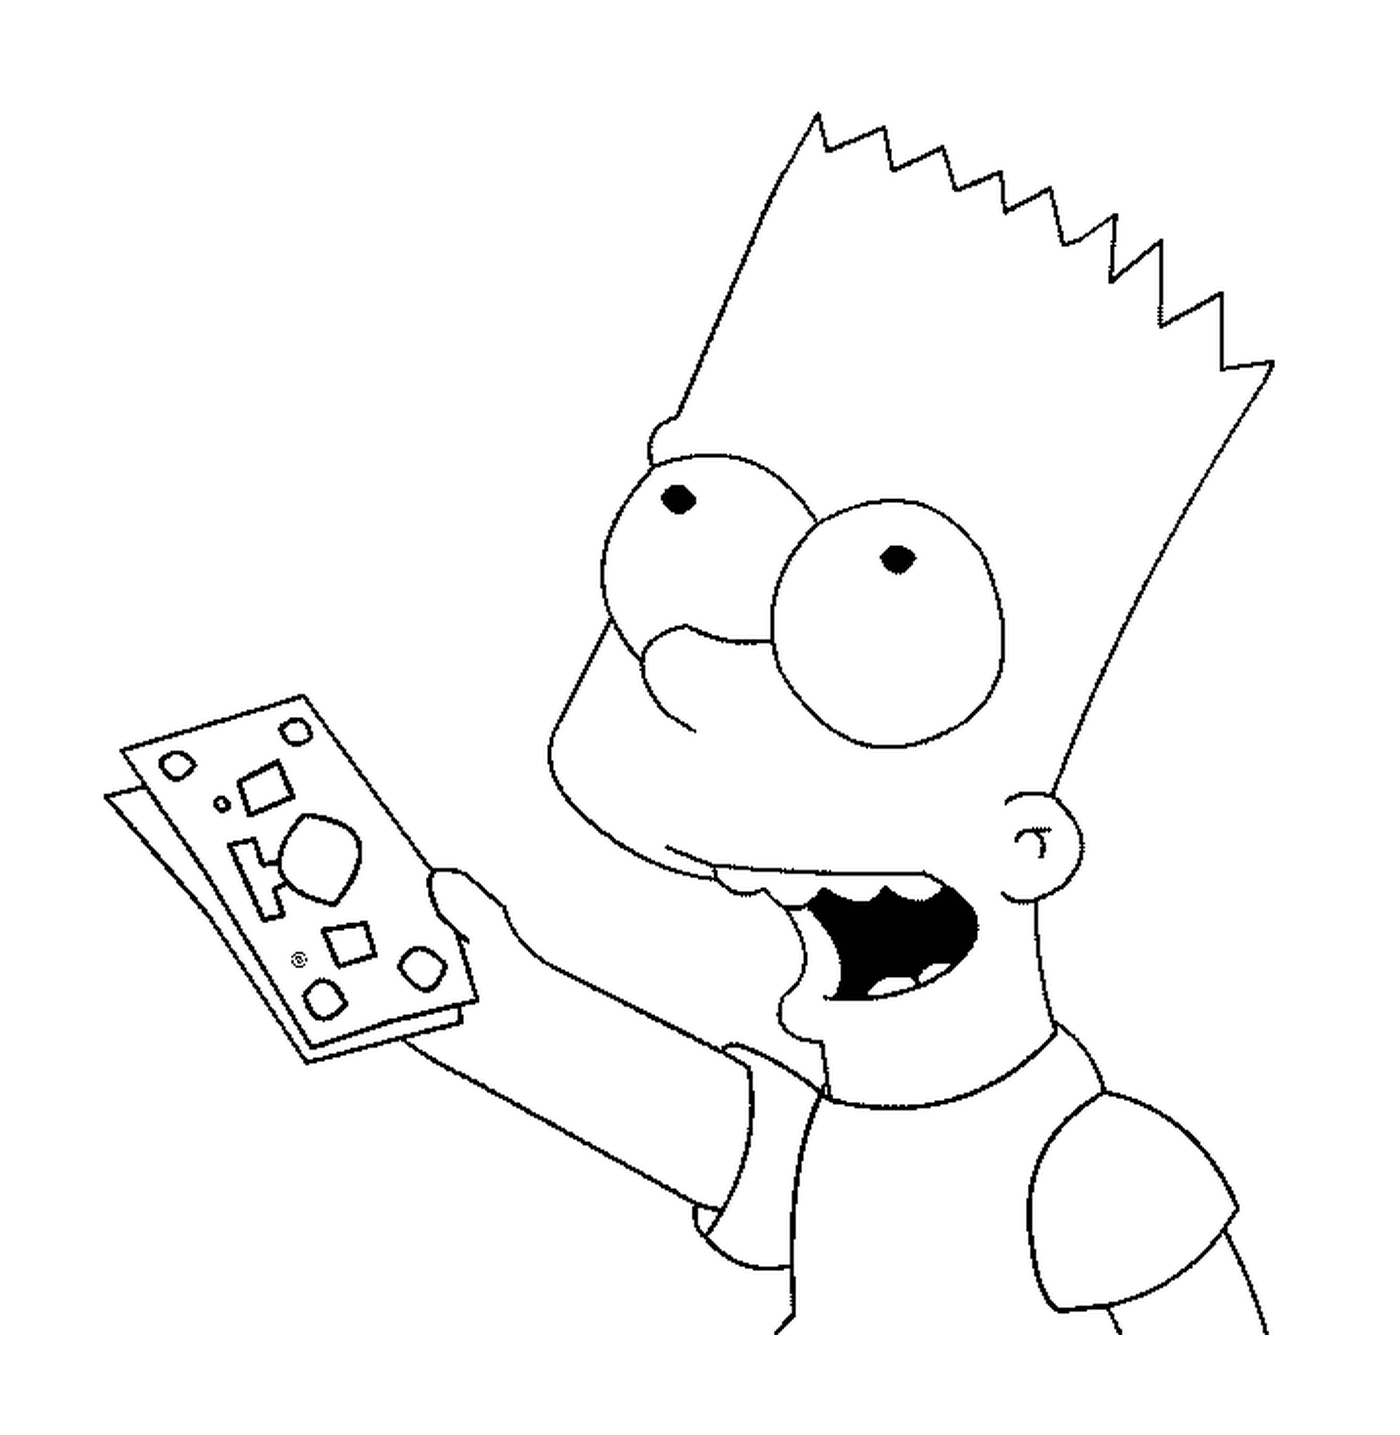  Bart's got bank notes 